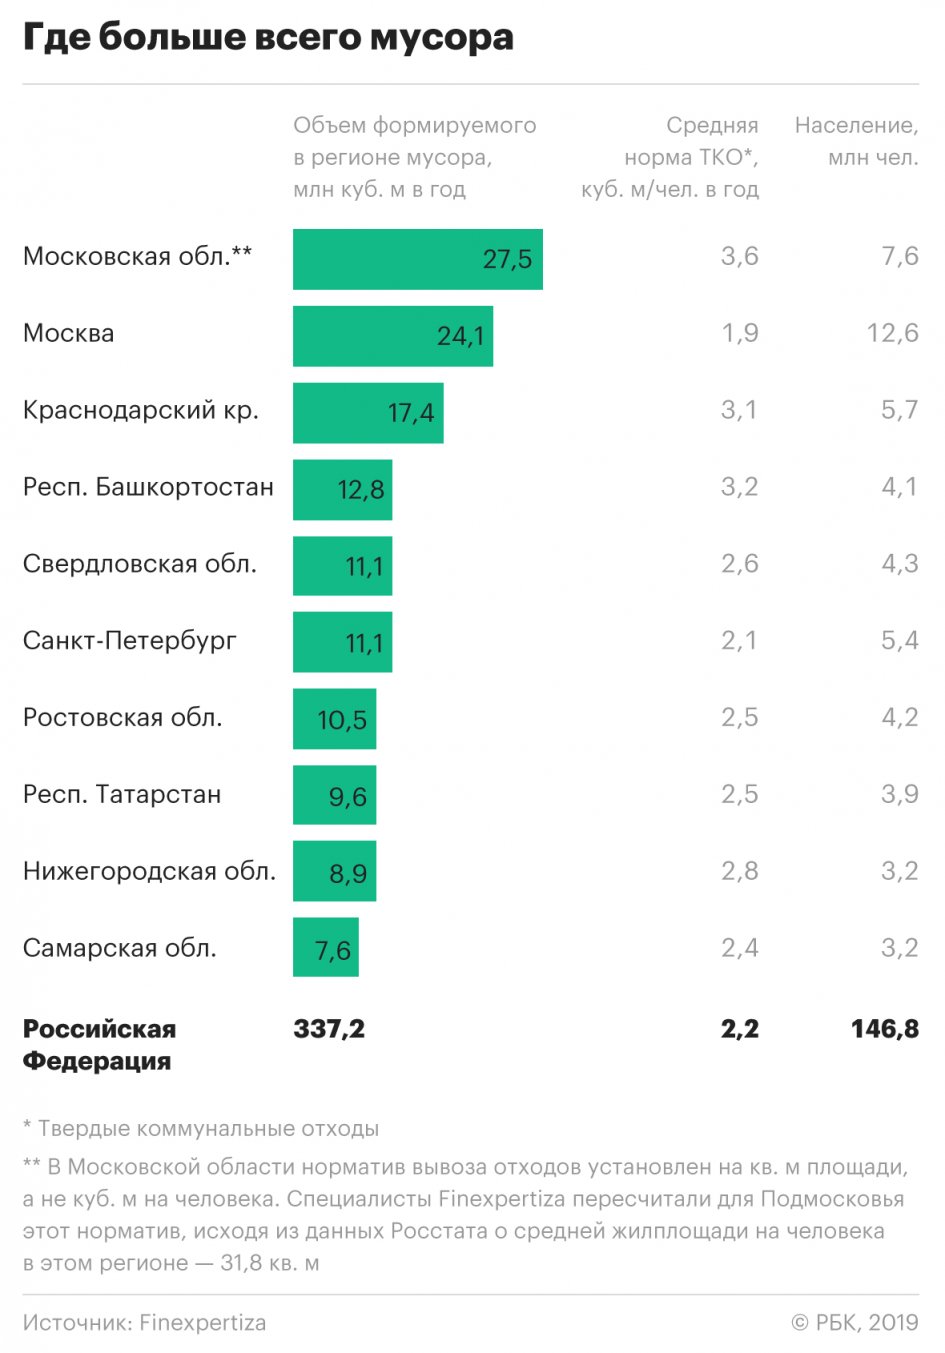 Кубань заняла третье место в рейтинге самых замусоренных регионов РФ